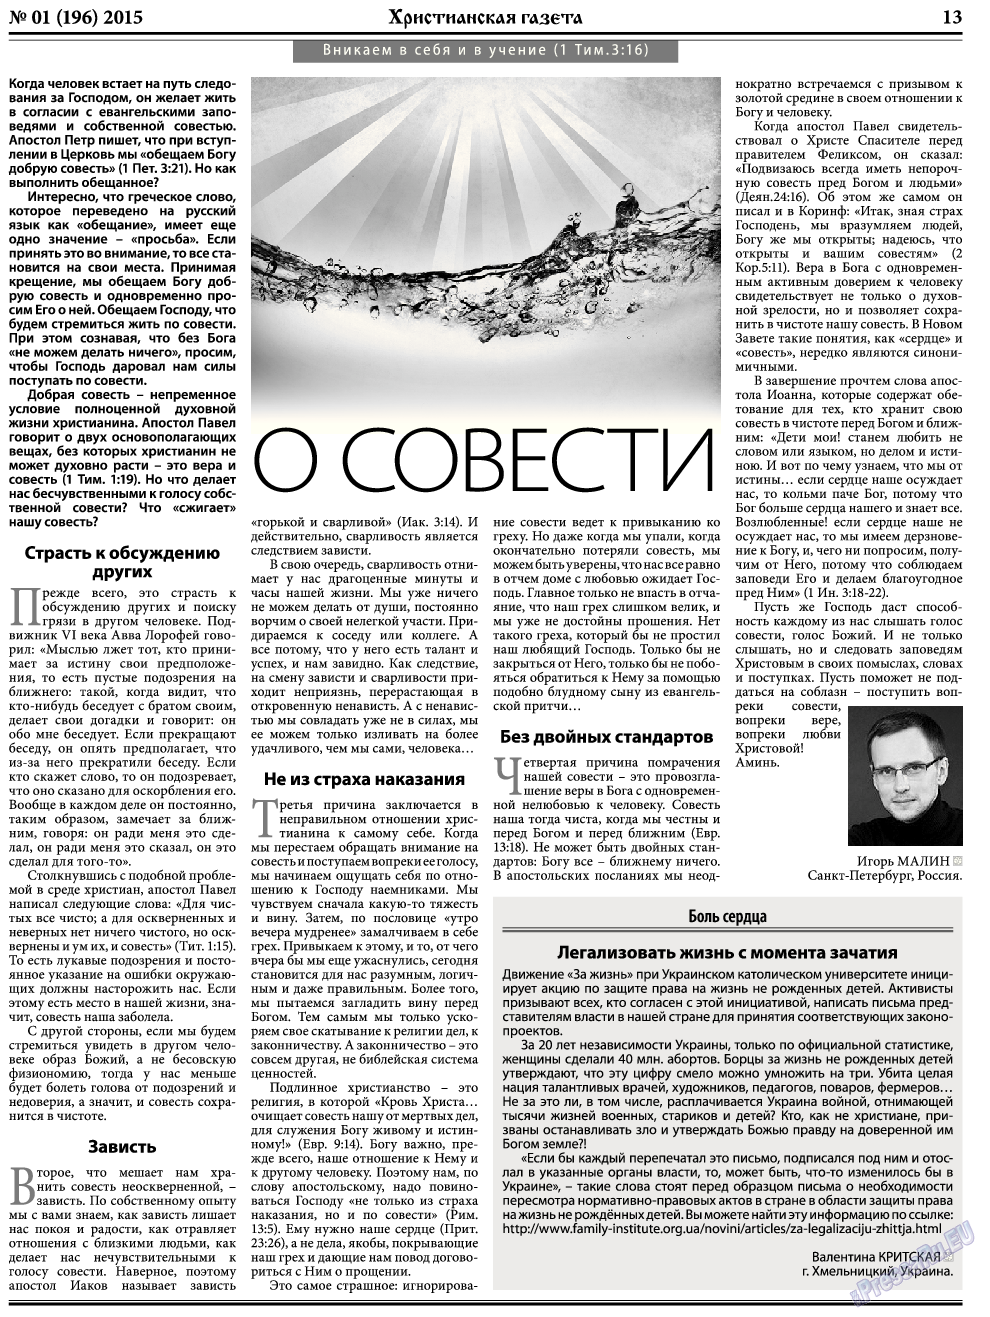 Христианская газета, газета. 2015 №1 стр.21